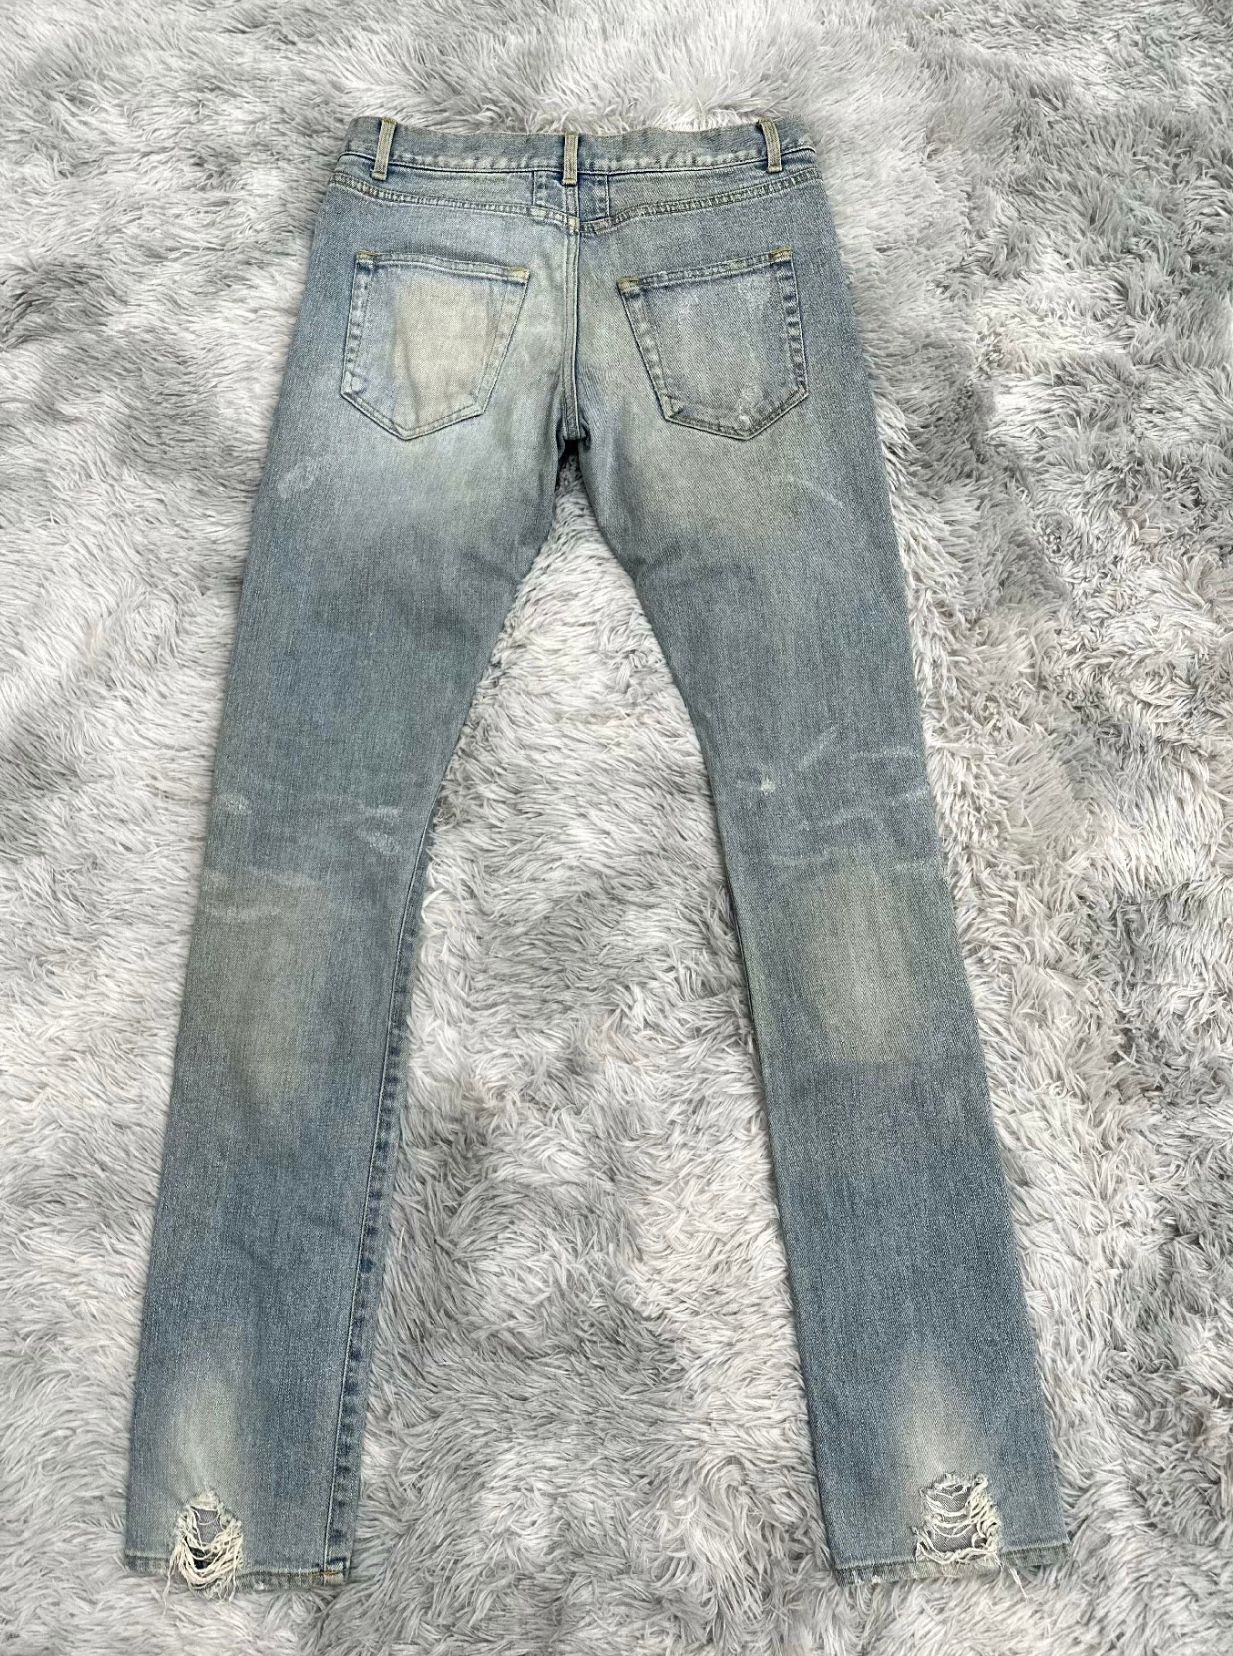 Saint Laurent 2014 Destroyed D02 Jeans by Hedi - 2